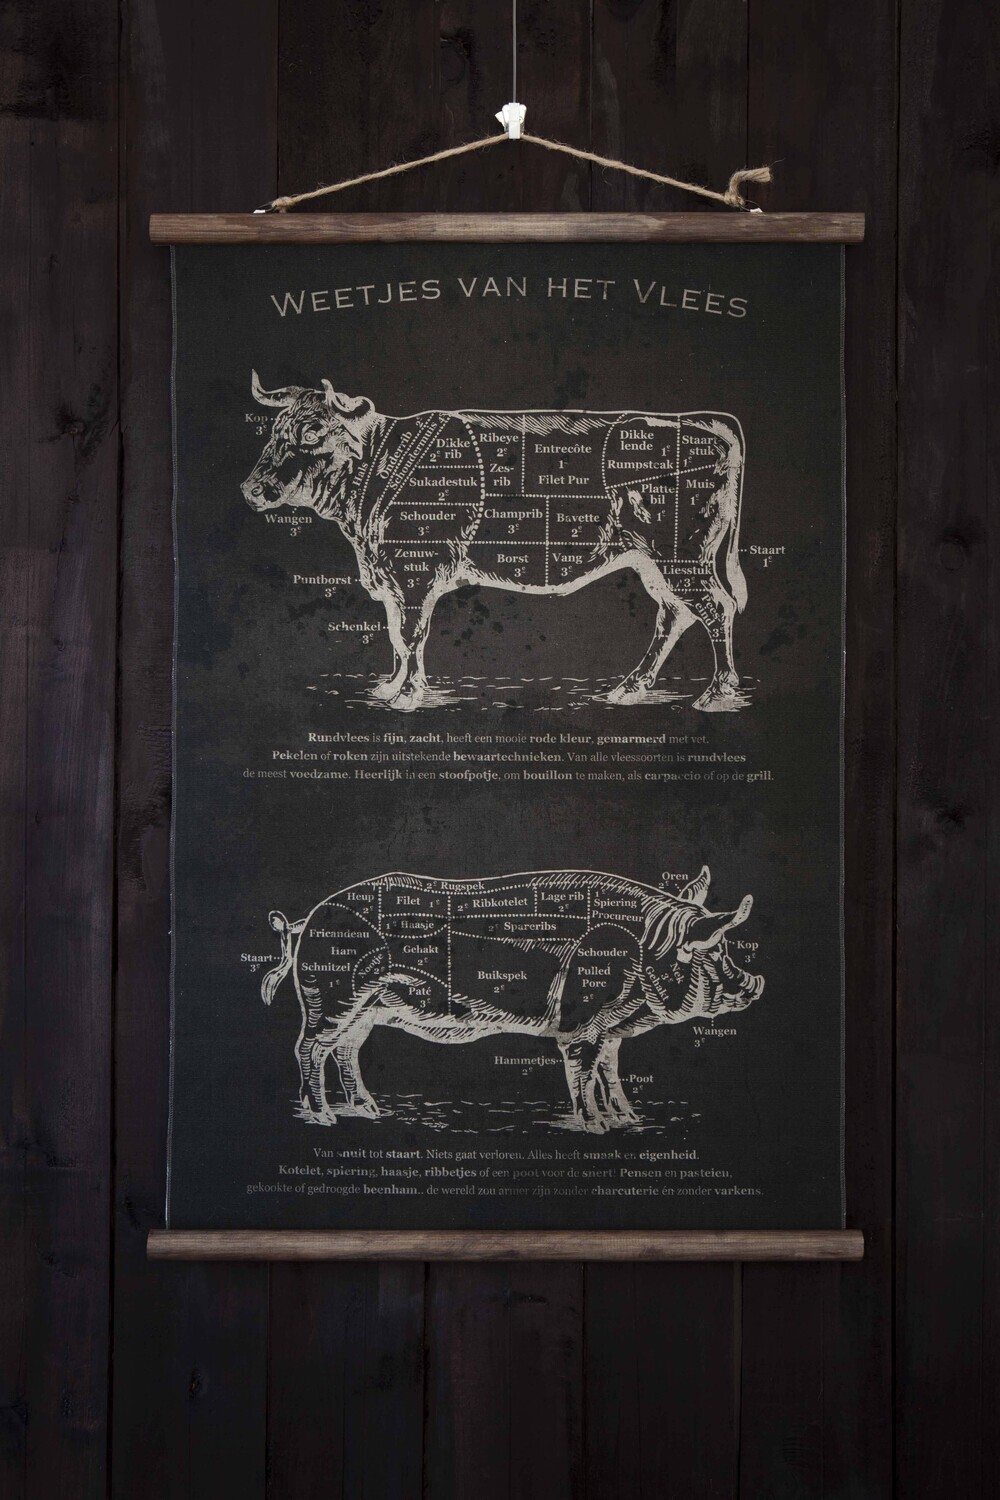 Weetjes van het Vlees Charcoal 'Vlaamse versie'